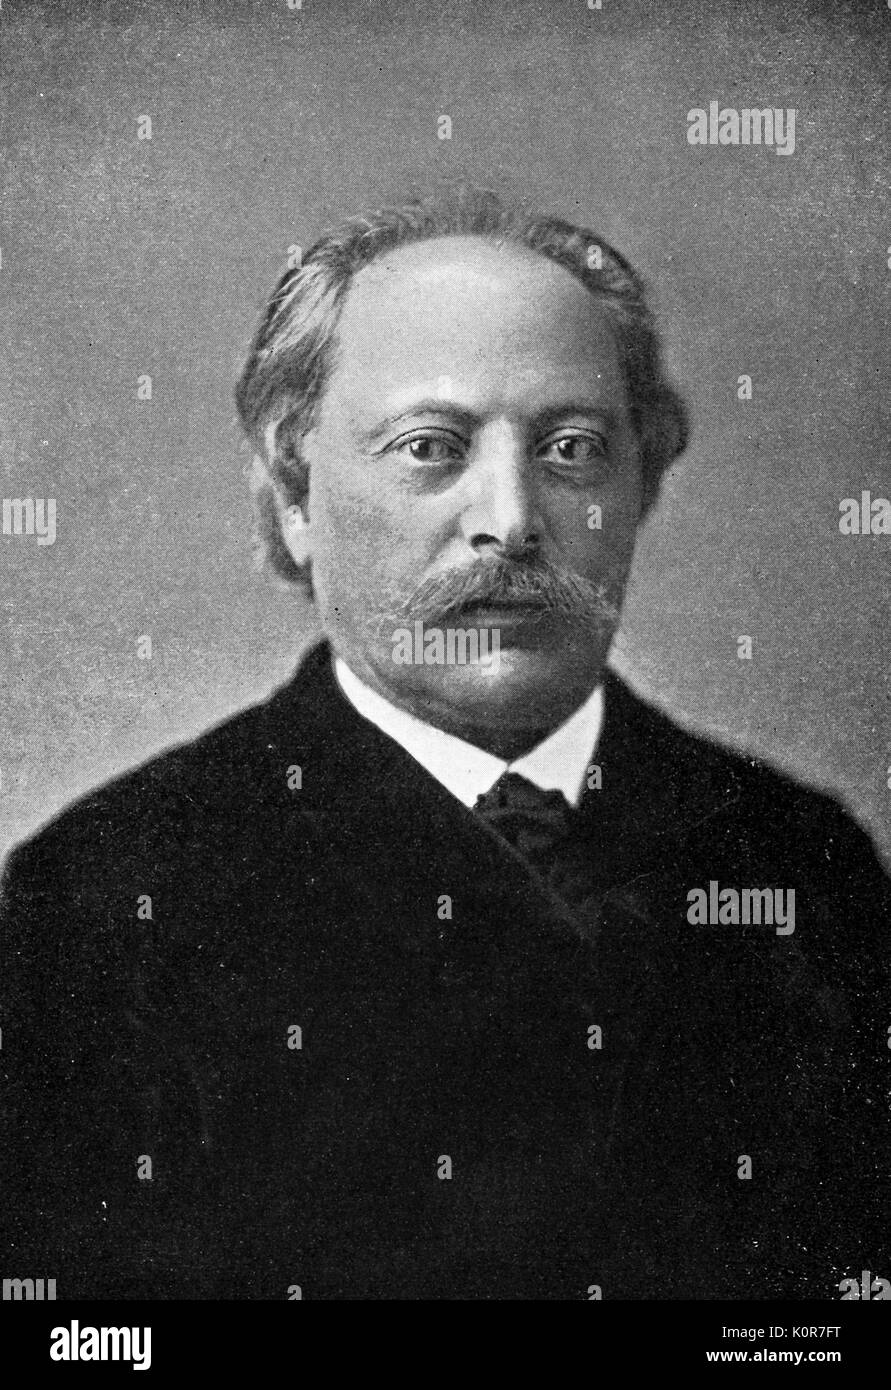 Carl GOLDMARK - ritratto del compositore austro-ungarico. 1830-1915 Foto Stock